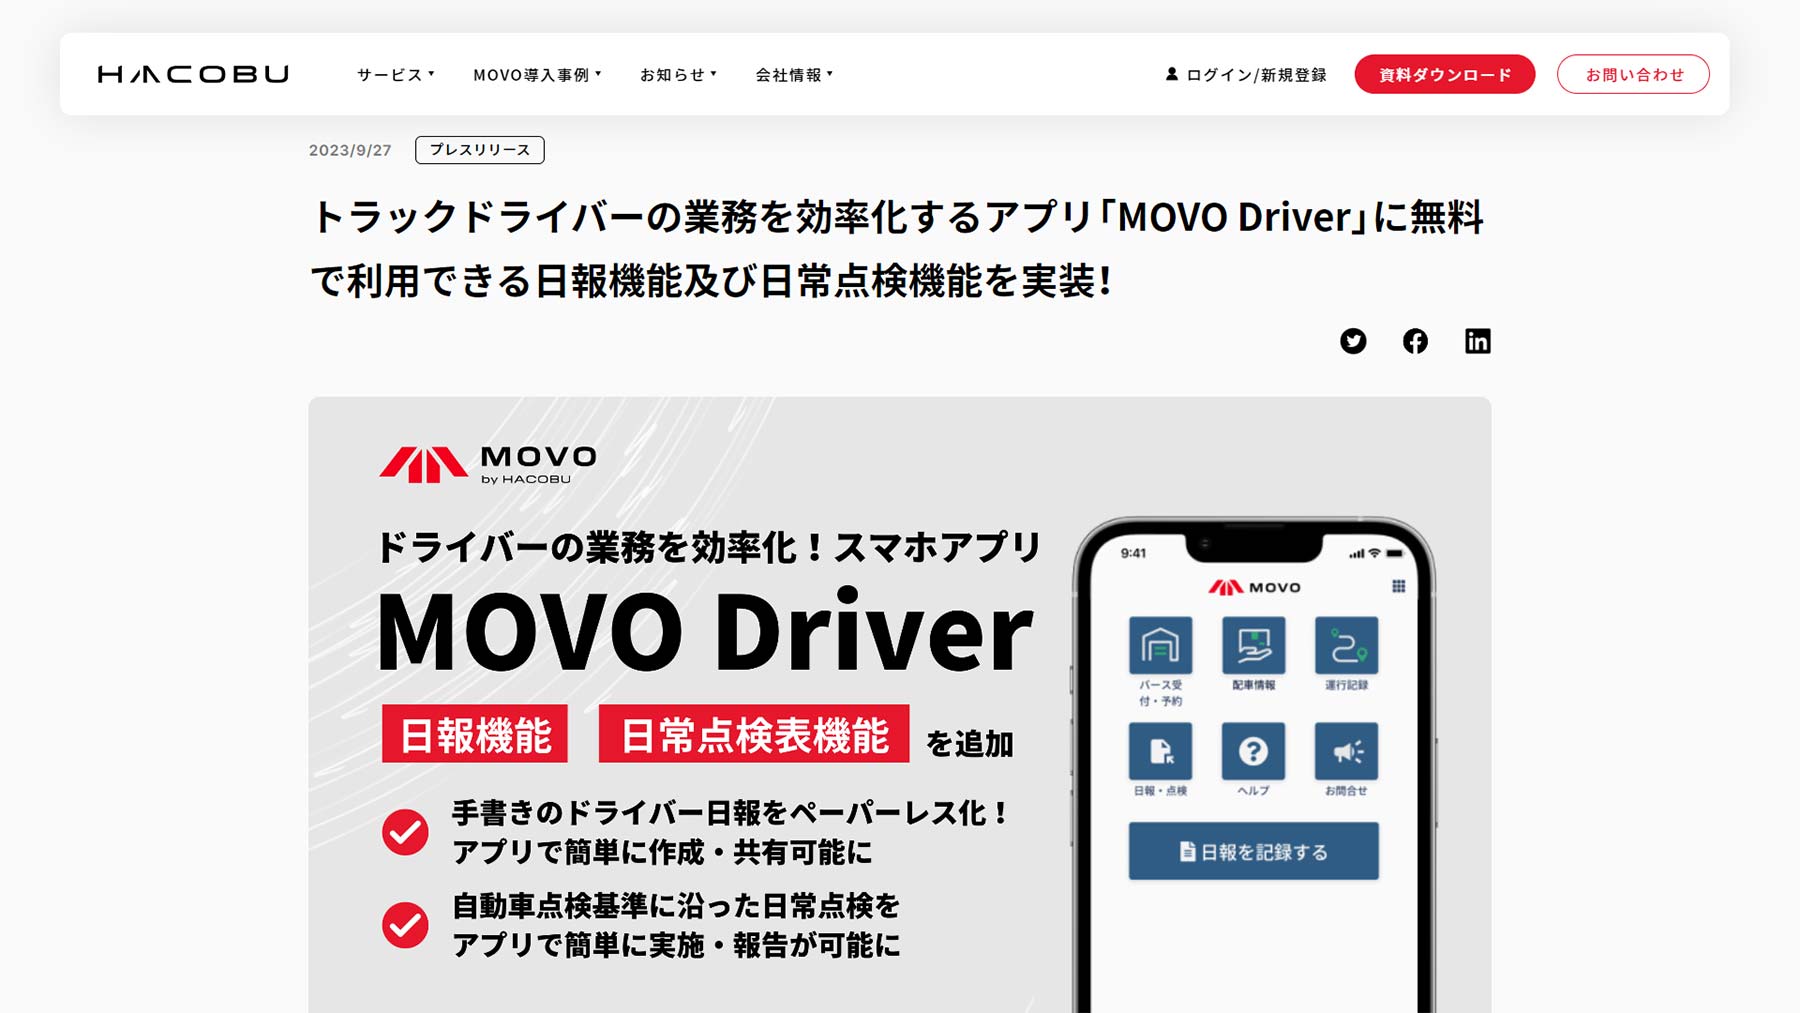 MOVO Driver公式Webサイト